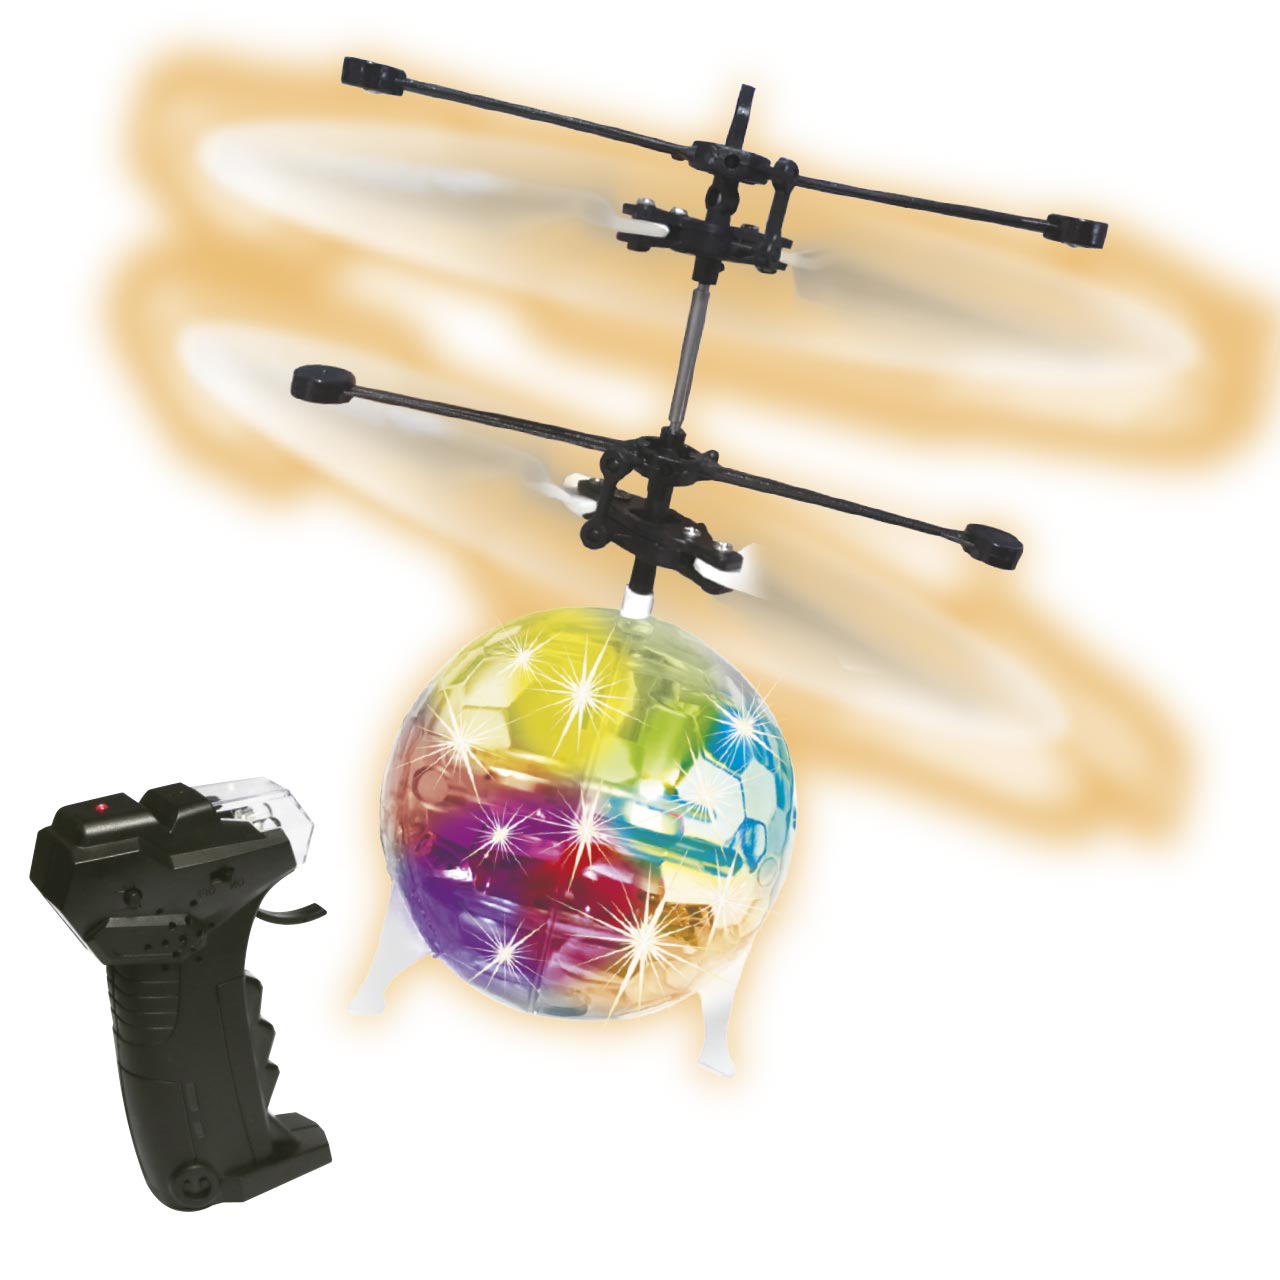 Juguete de bola voladora LED, bola voladora giratoria portátil